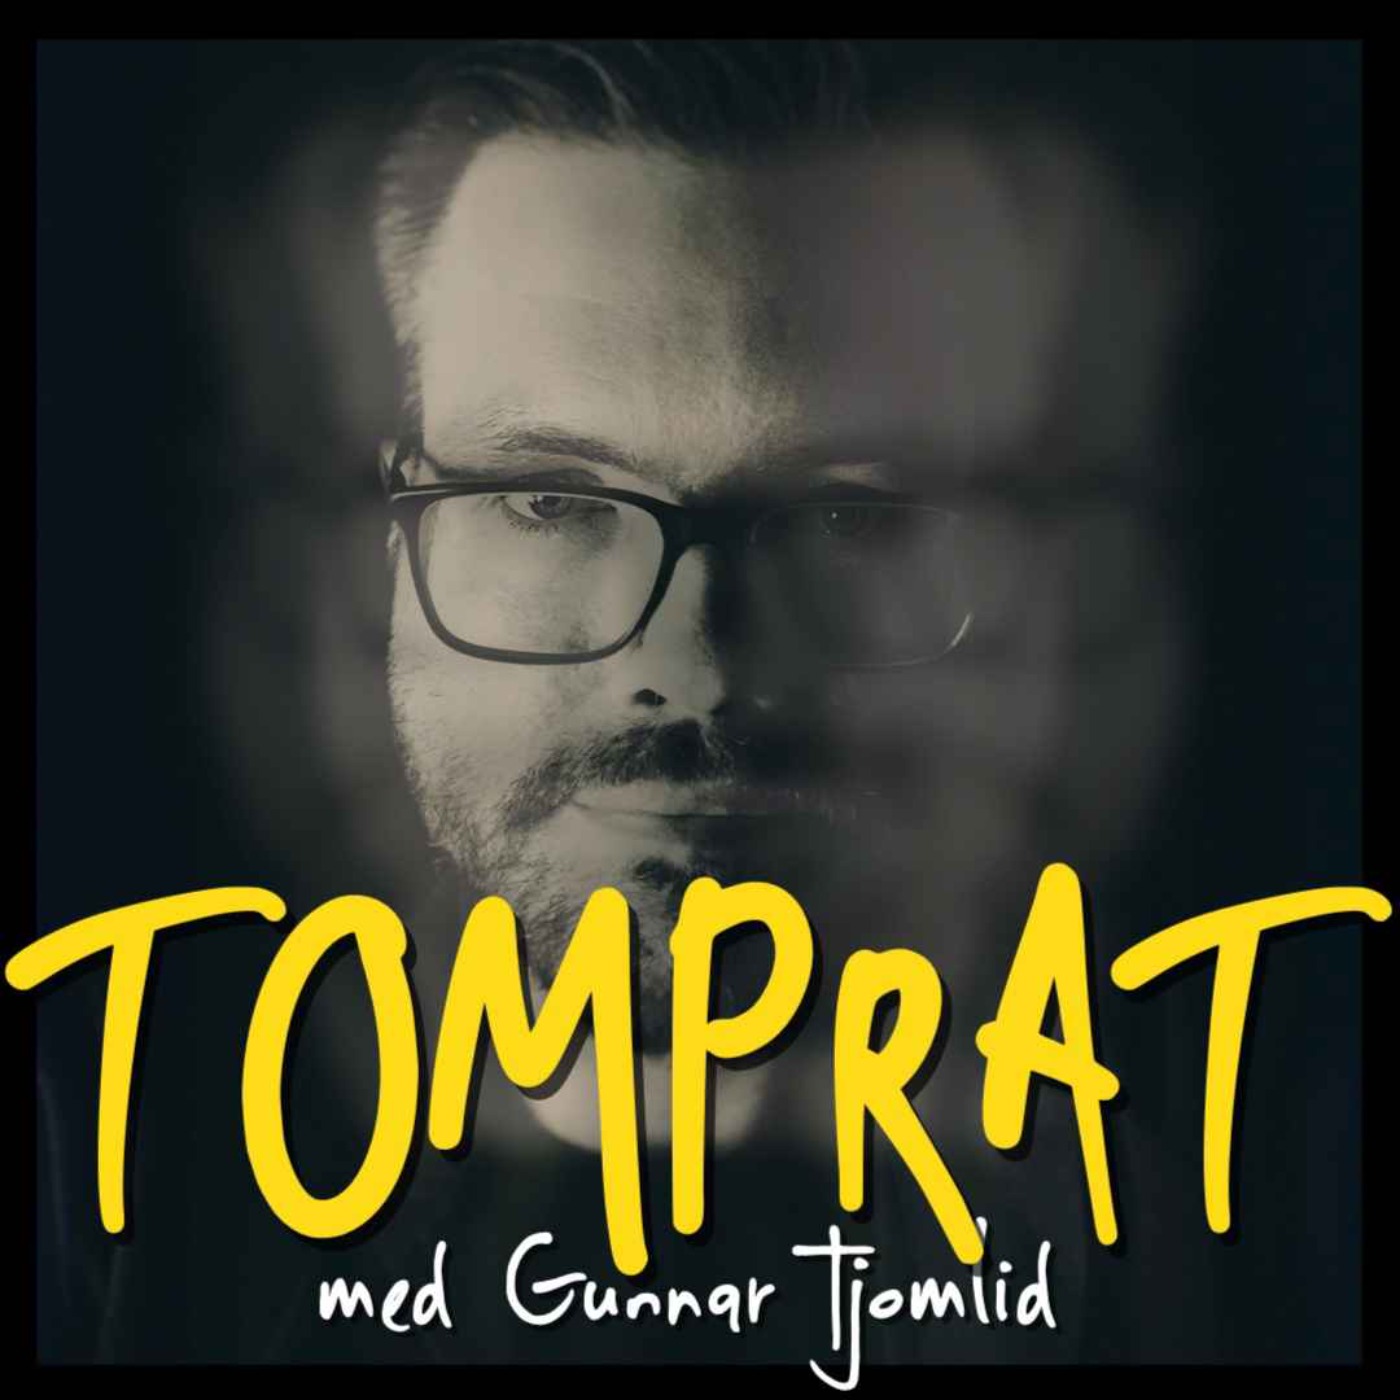 Tomprat med Gunnar Tjomlid